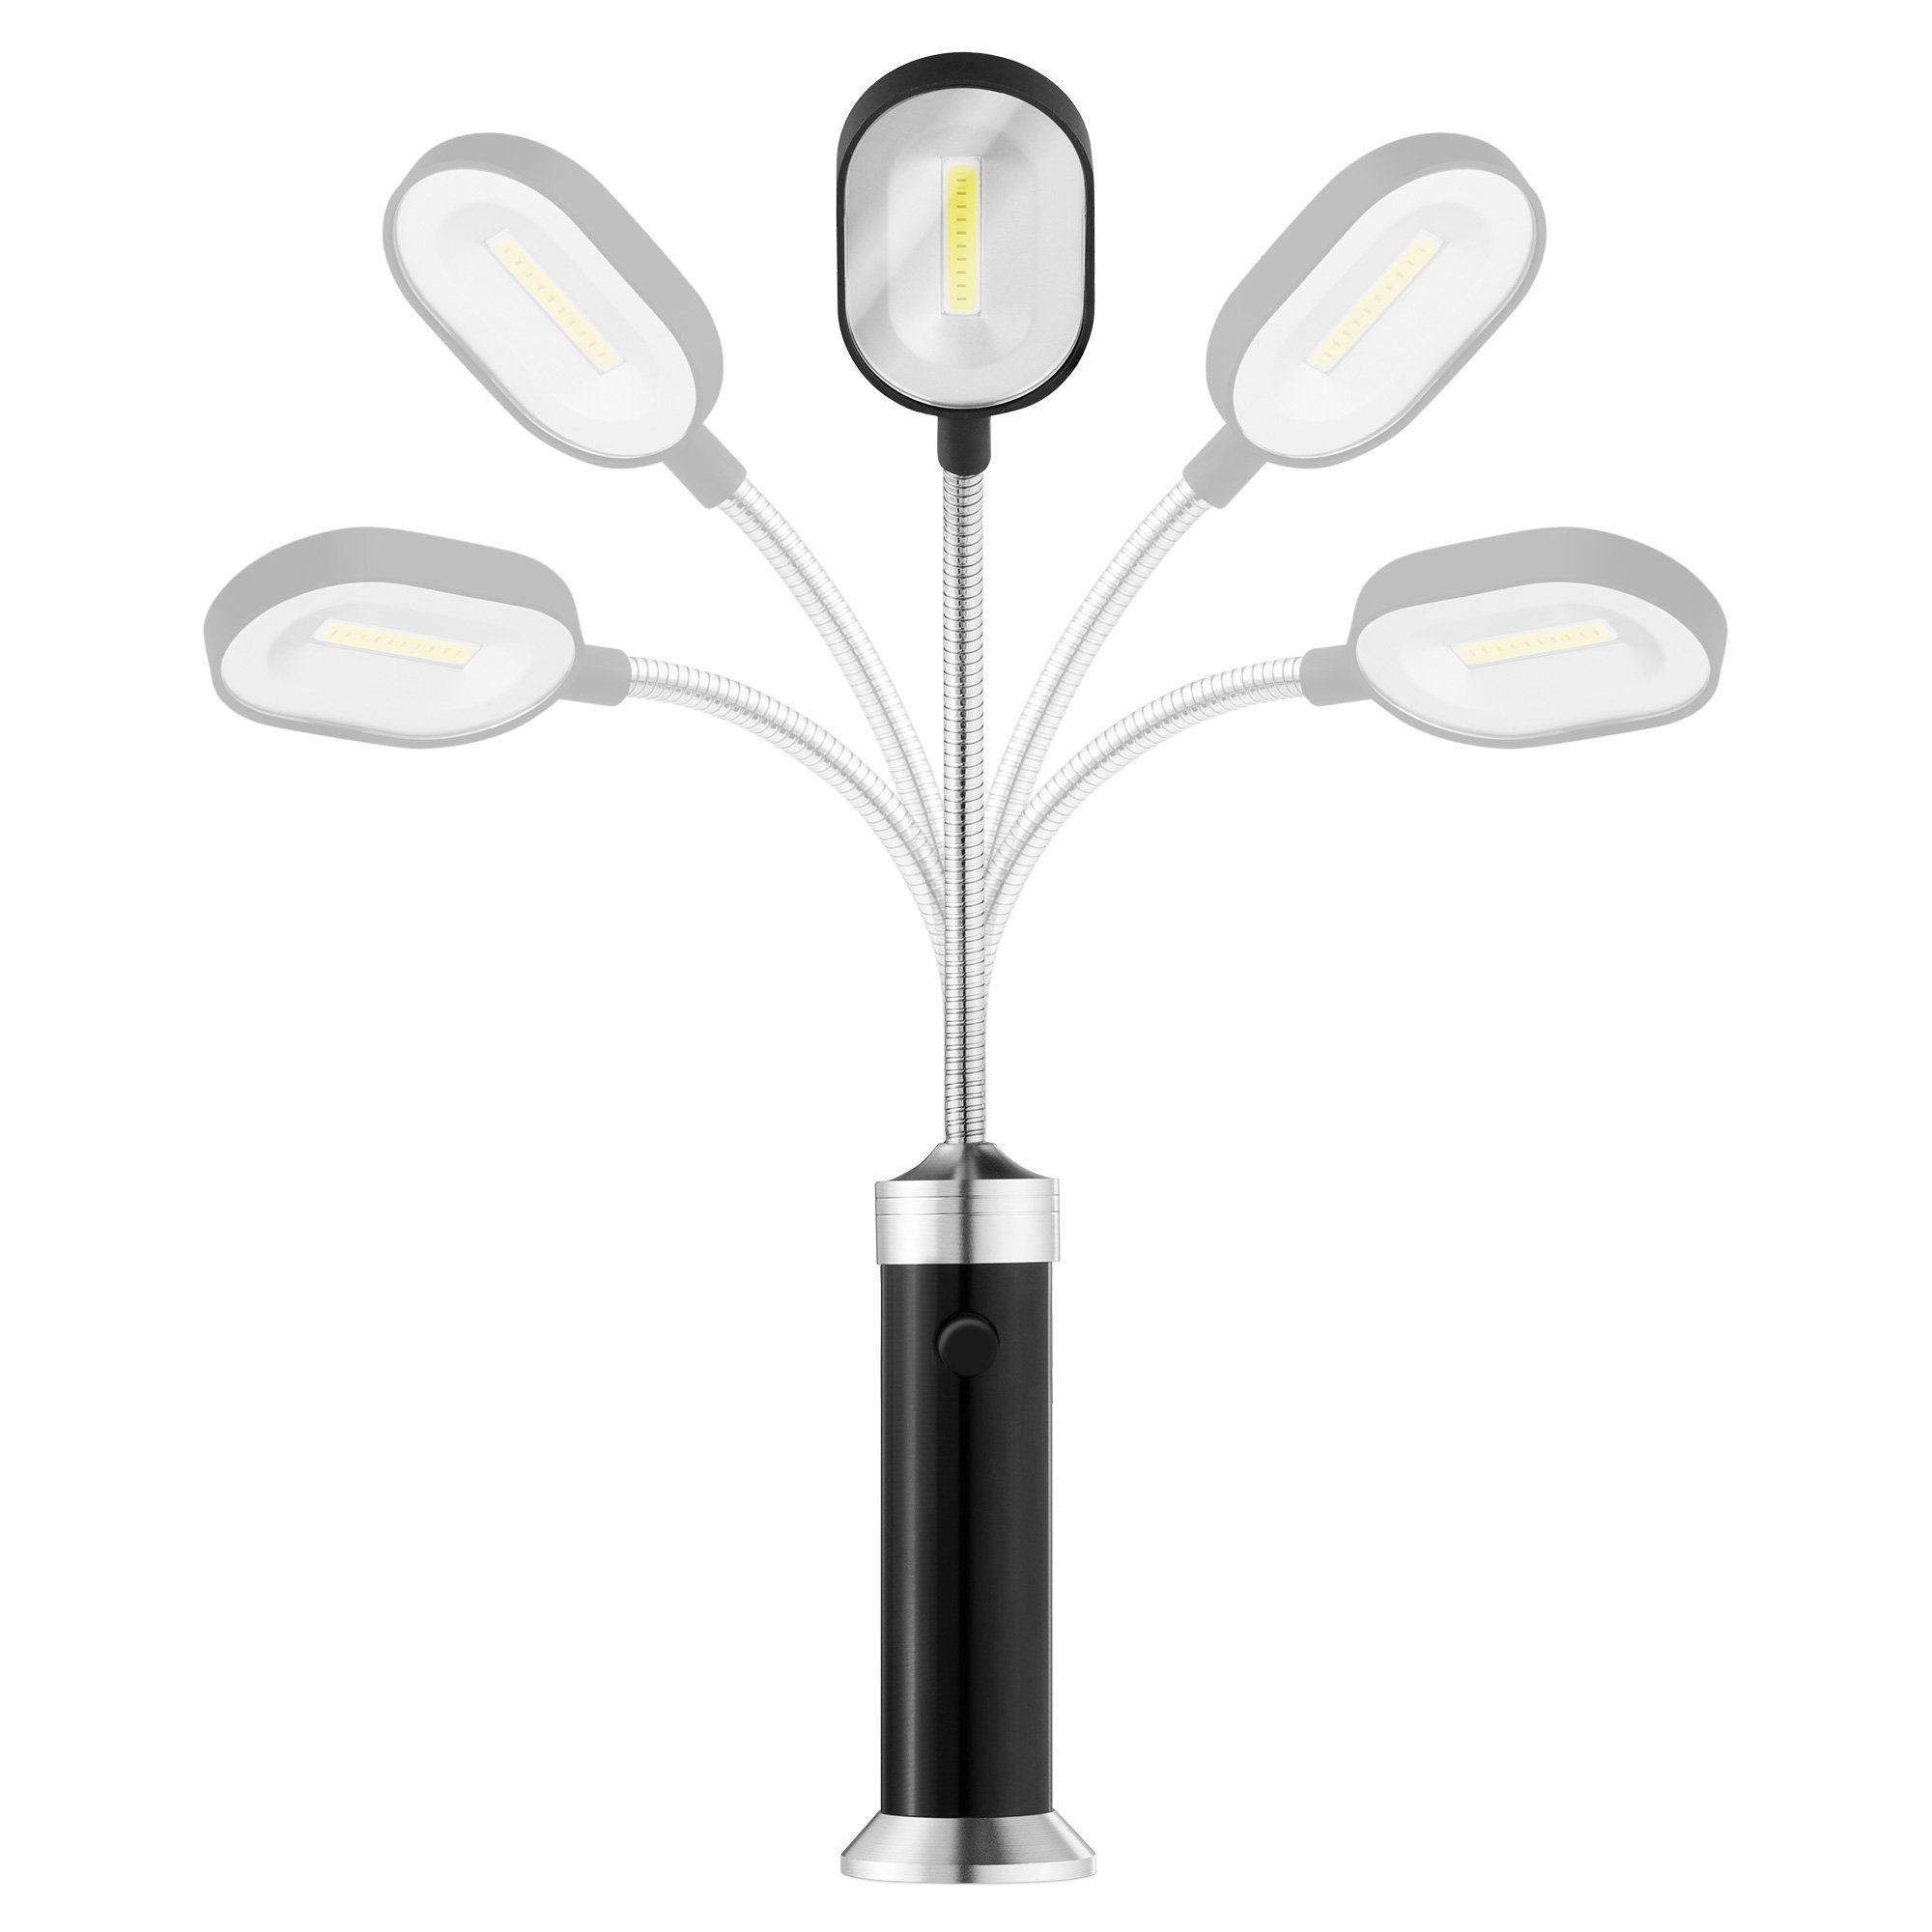 Grilllampe LED für Grilllampe 360° 2x magnetische Navaris Ausleuchtung